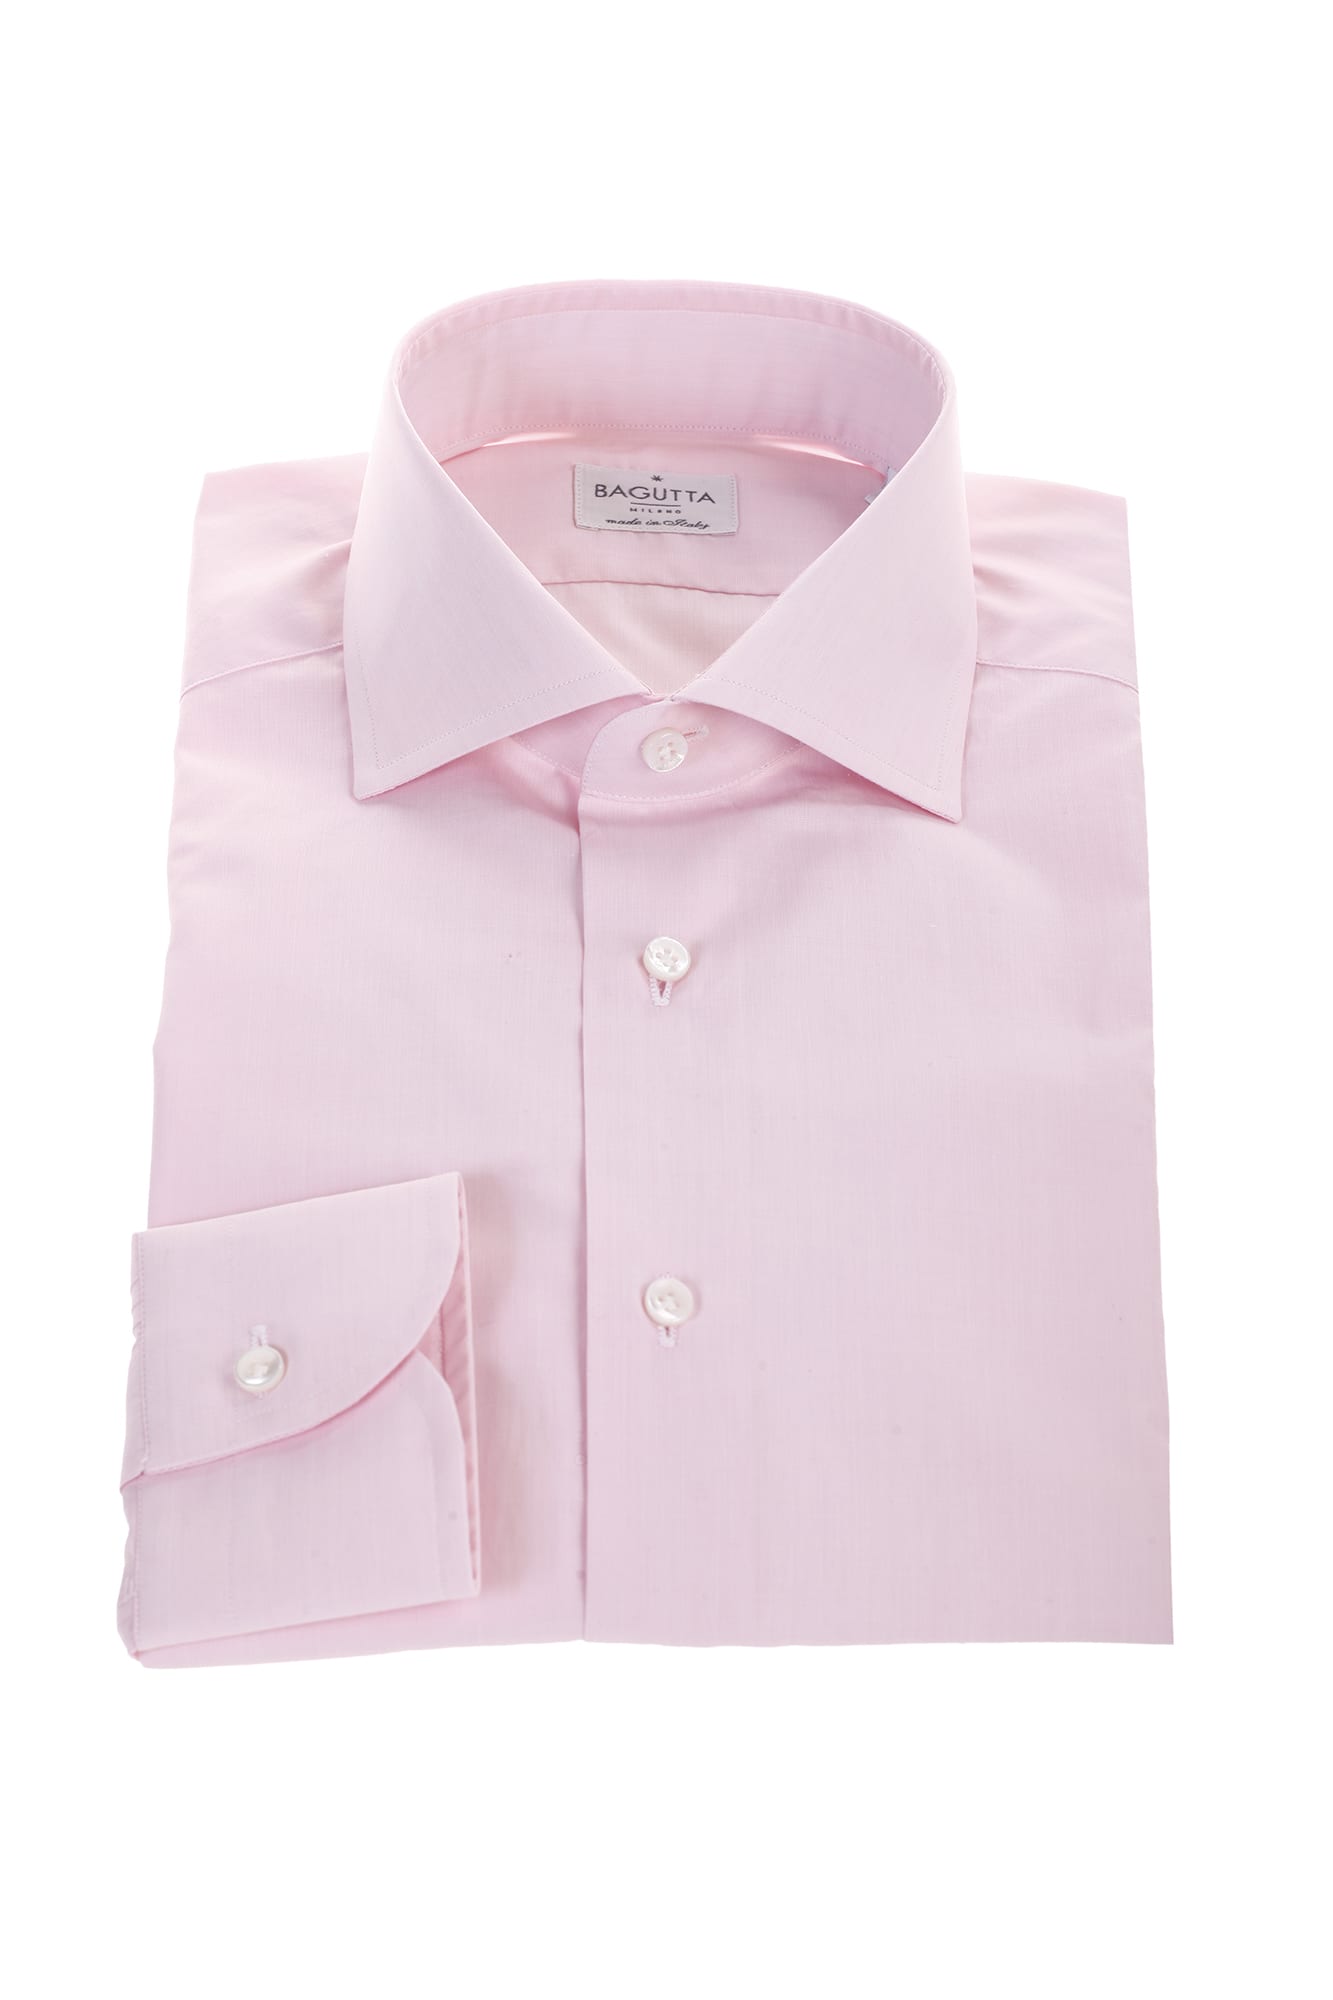 Bagutta pink cotton shirt